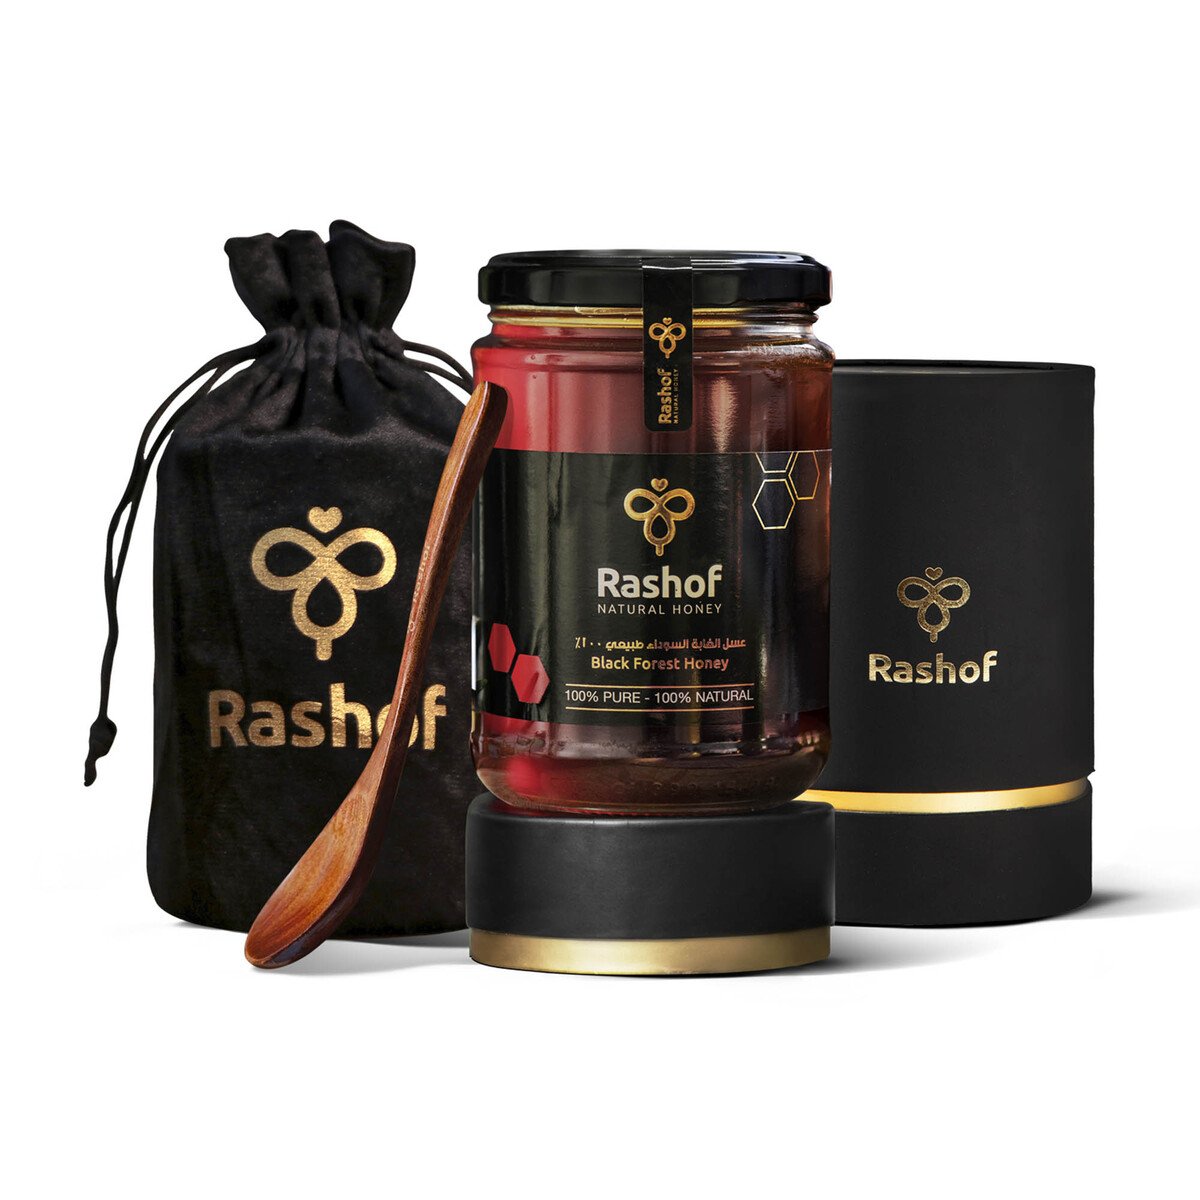 Rashof Natural Black Forest Honey 500g